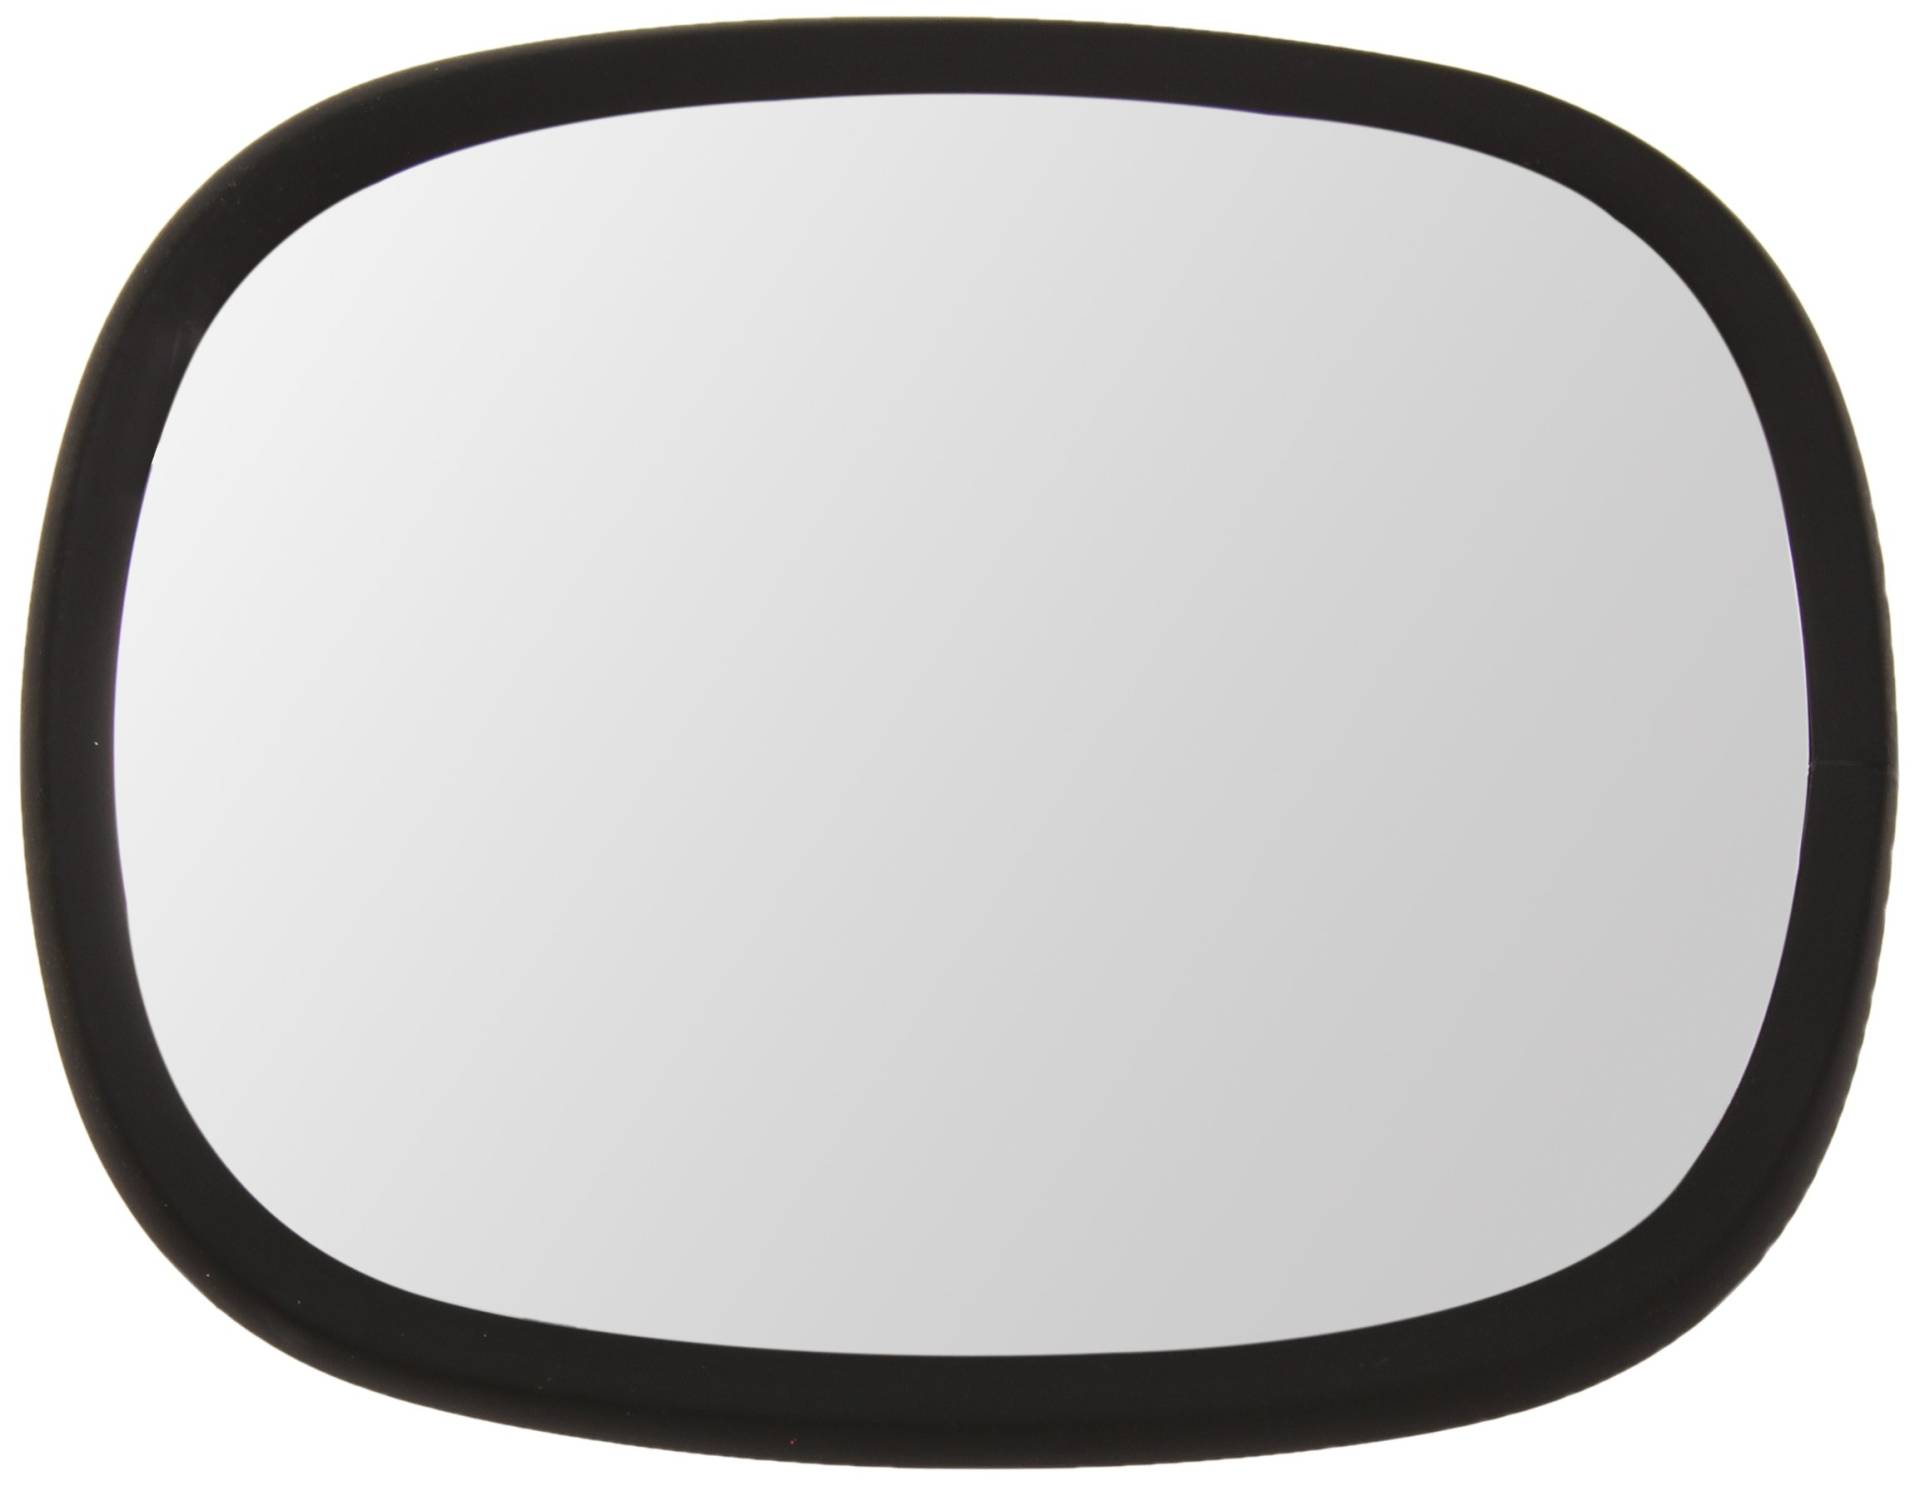 HELLA - Außenspiegel - geklemmt - Kunststoffgehäuse - schwarz - Breite: 165mm - Höhe: 210mm - beidseitig - 8SB 002 404-121 von Hella